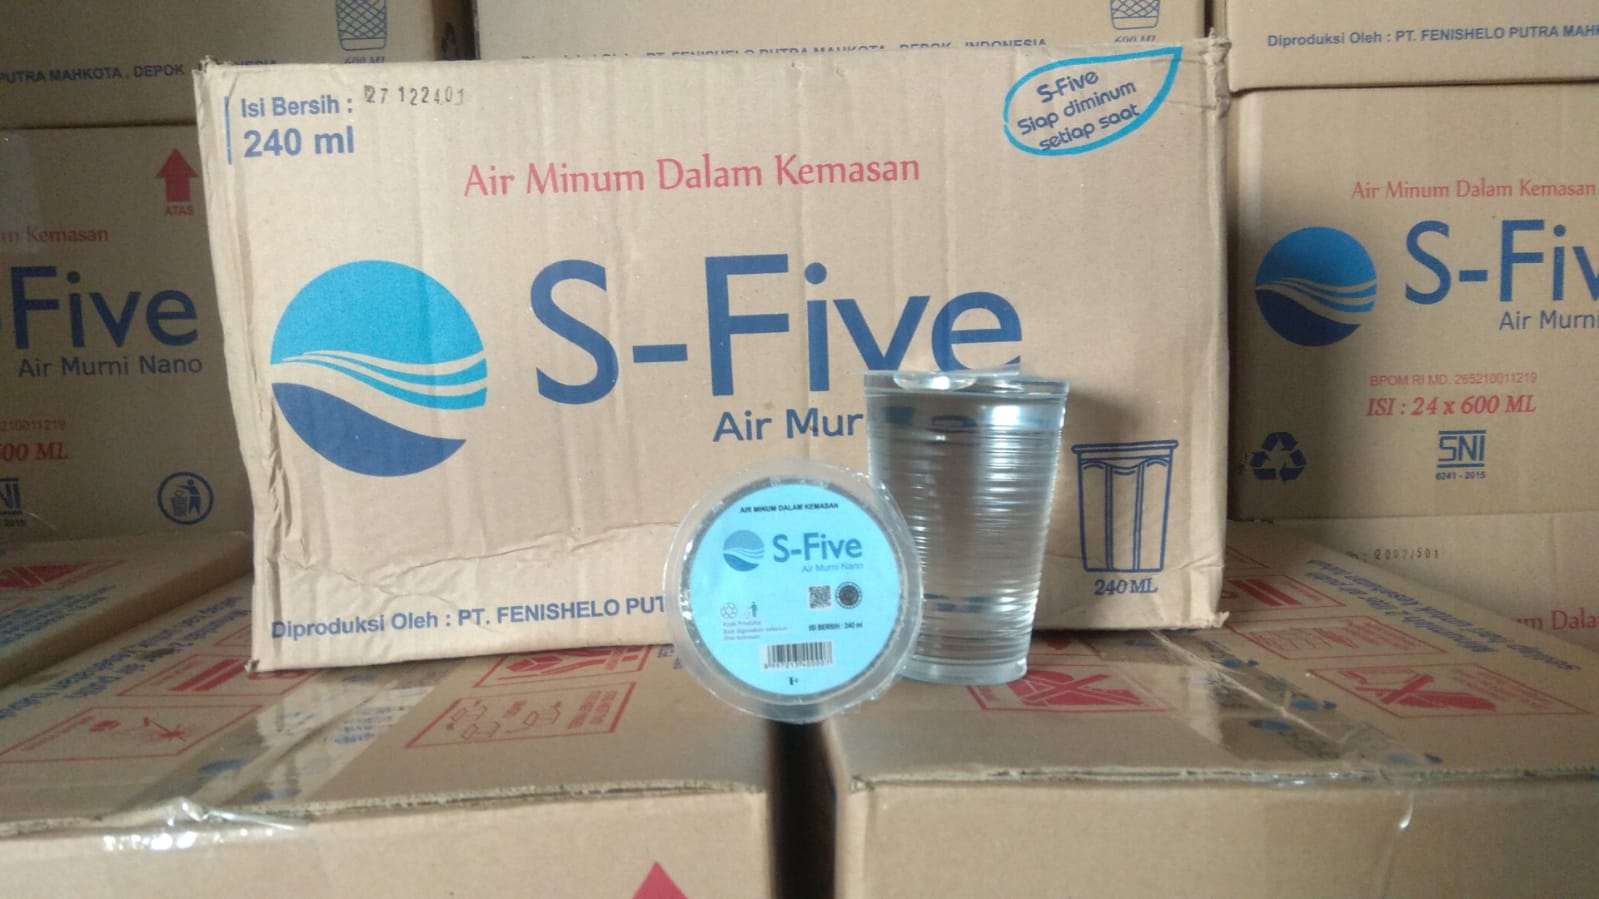 Air minum S-Five gelas 240ml